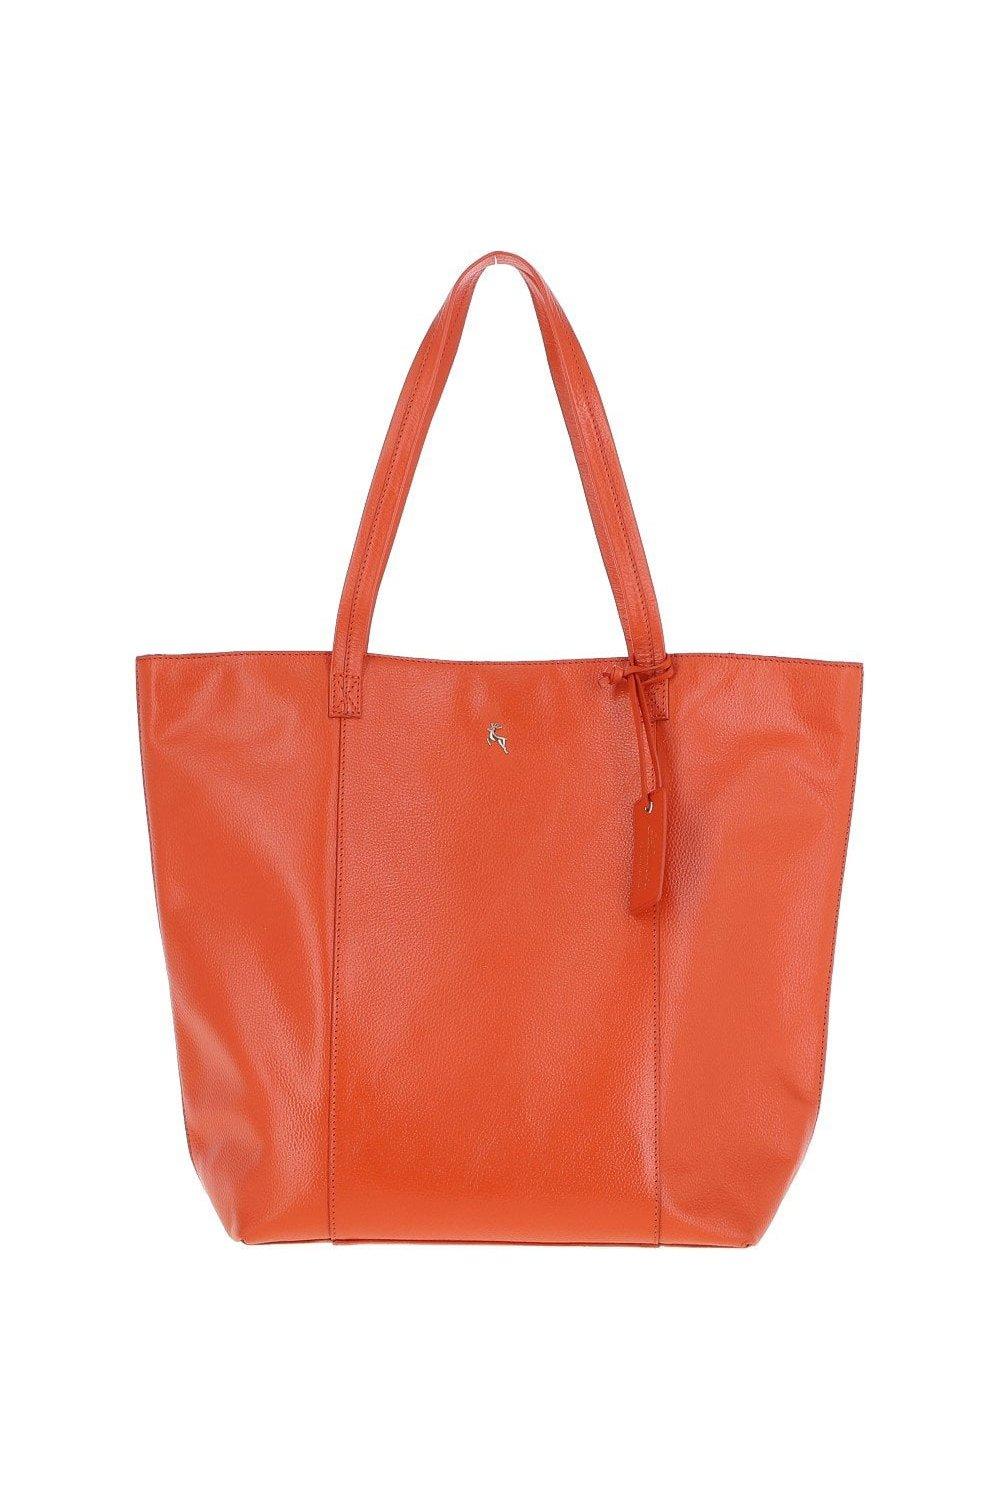 брелок натуральная кожа Кожаная сумка-шоппер Объемная с длинной ручкой Ashwood Leather, оранжевый